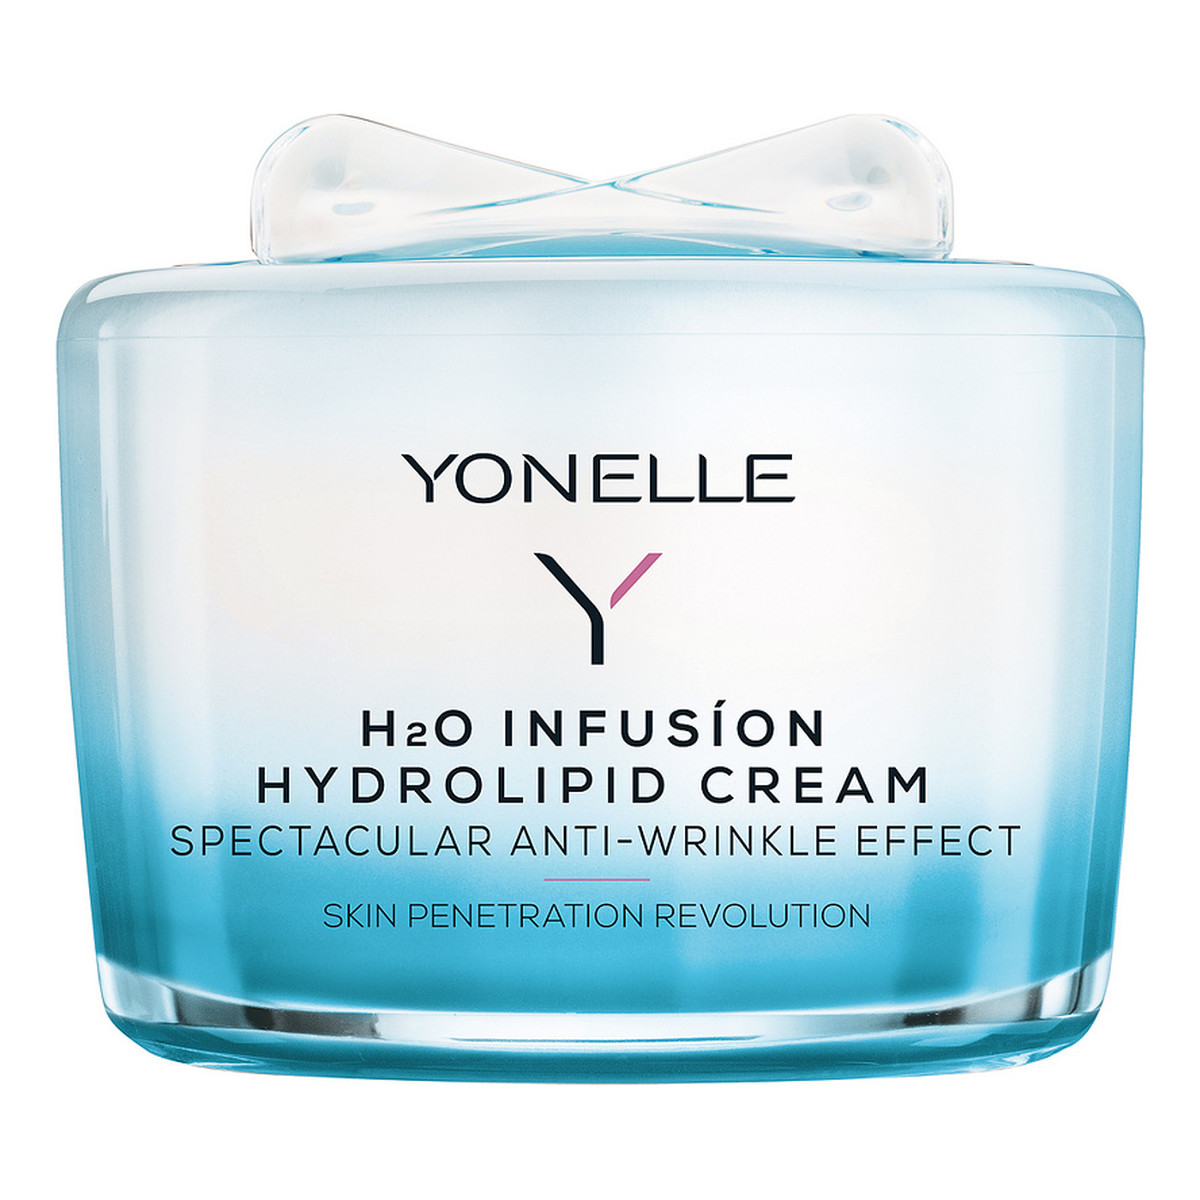 Yonelle H2O Infusion Hydrating Cream Nawilżający krem infuzyjny do skóry dojrzałej 55ml